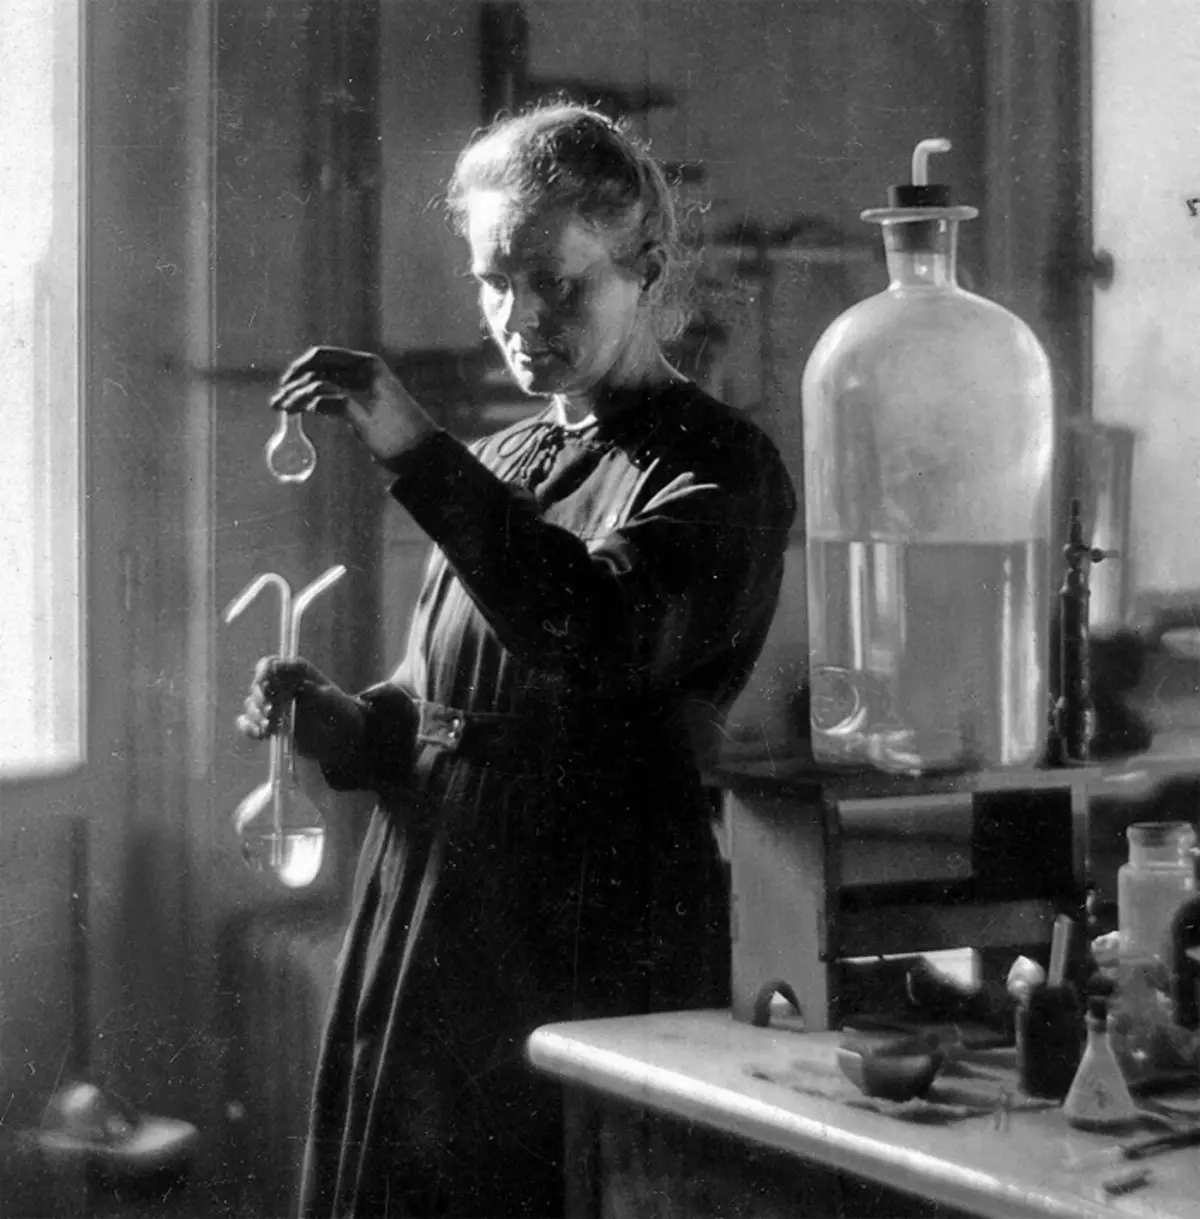 En plus des travaux de recherche et d'enseignement, Curie consulta des médecins